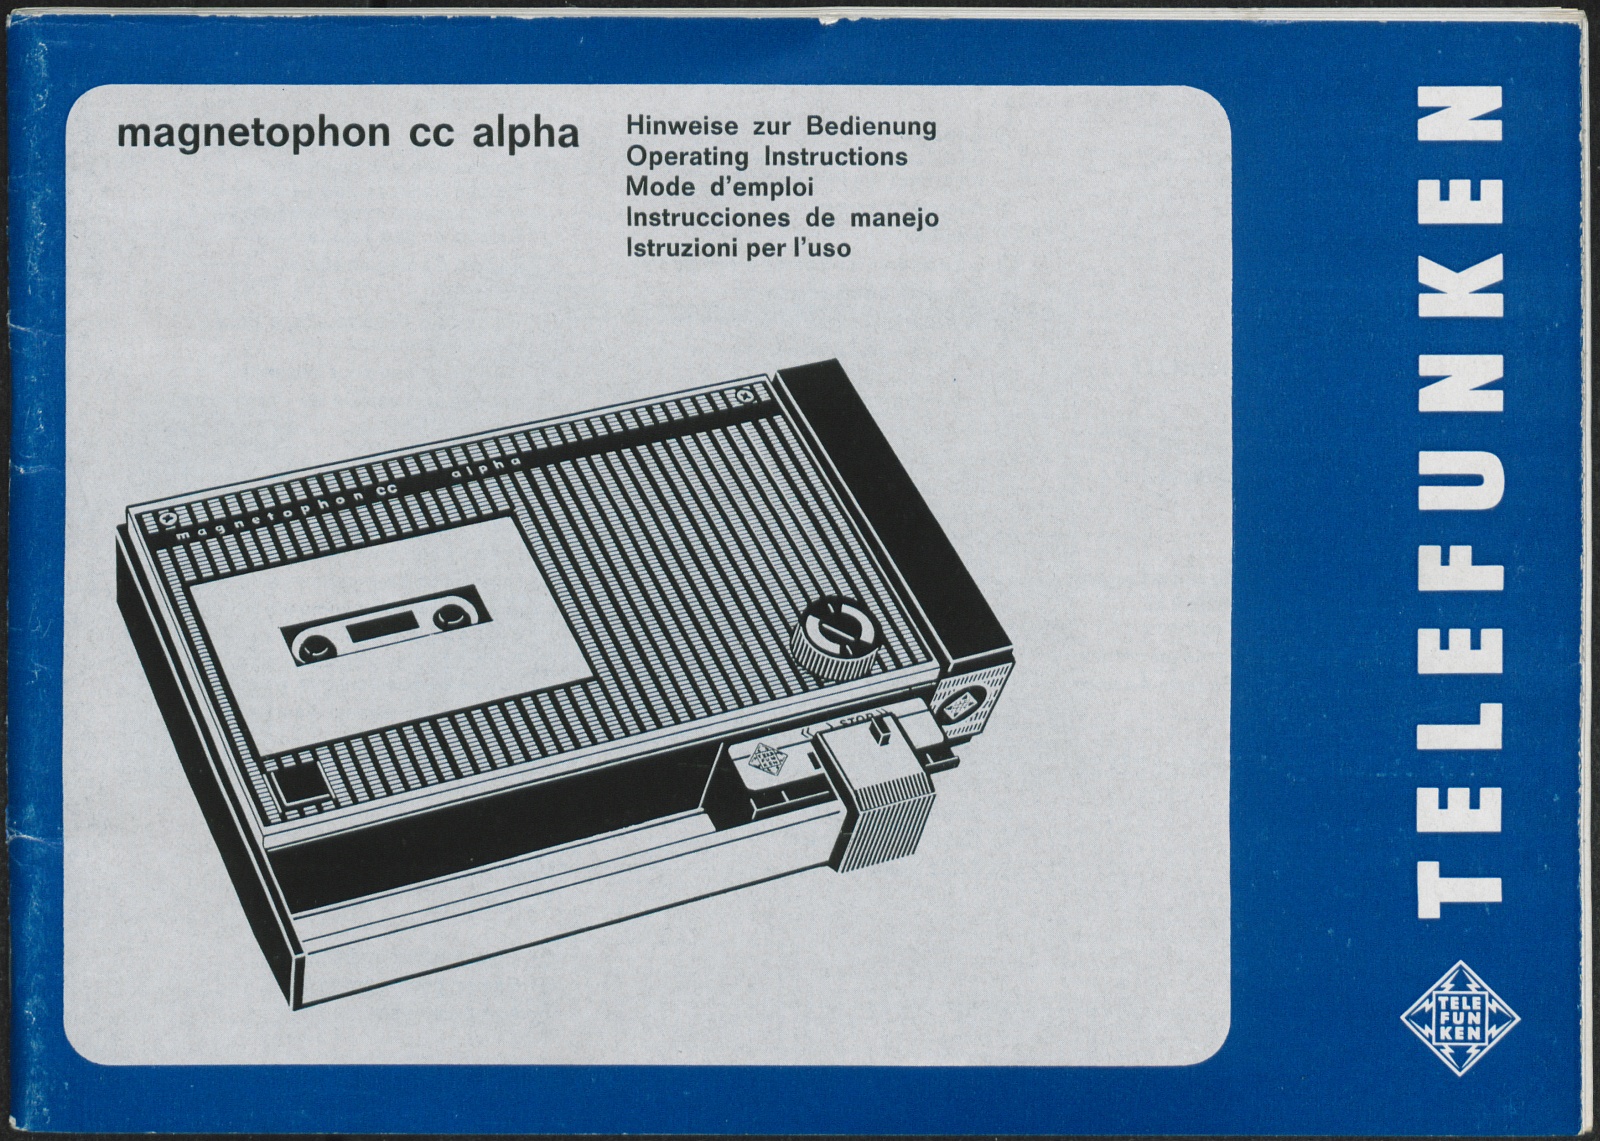 Bedienungsanleitung: Hinweise zur Bedienung Telefunken magnetophon cc alpha (Stiftung Deutsches Technikmuseum Berlin CC0)